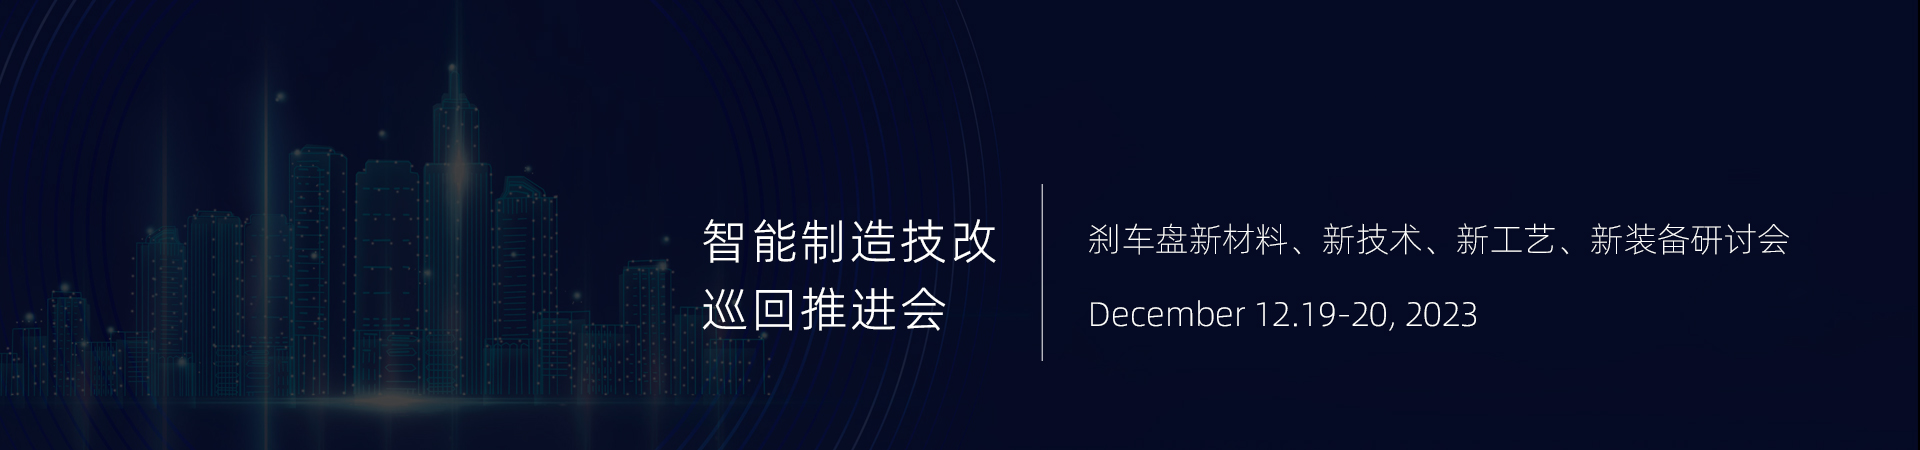 2022第22届中国国际磁性元器件及智能生产技术展览会